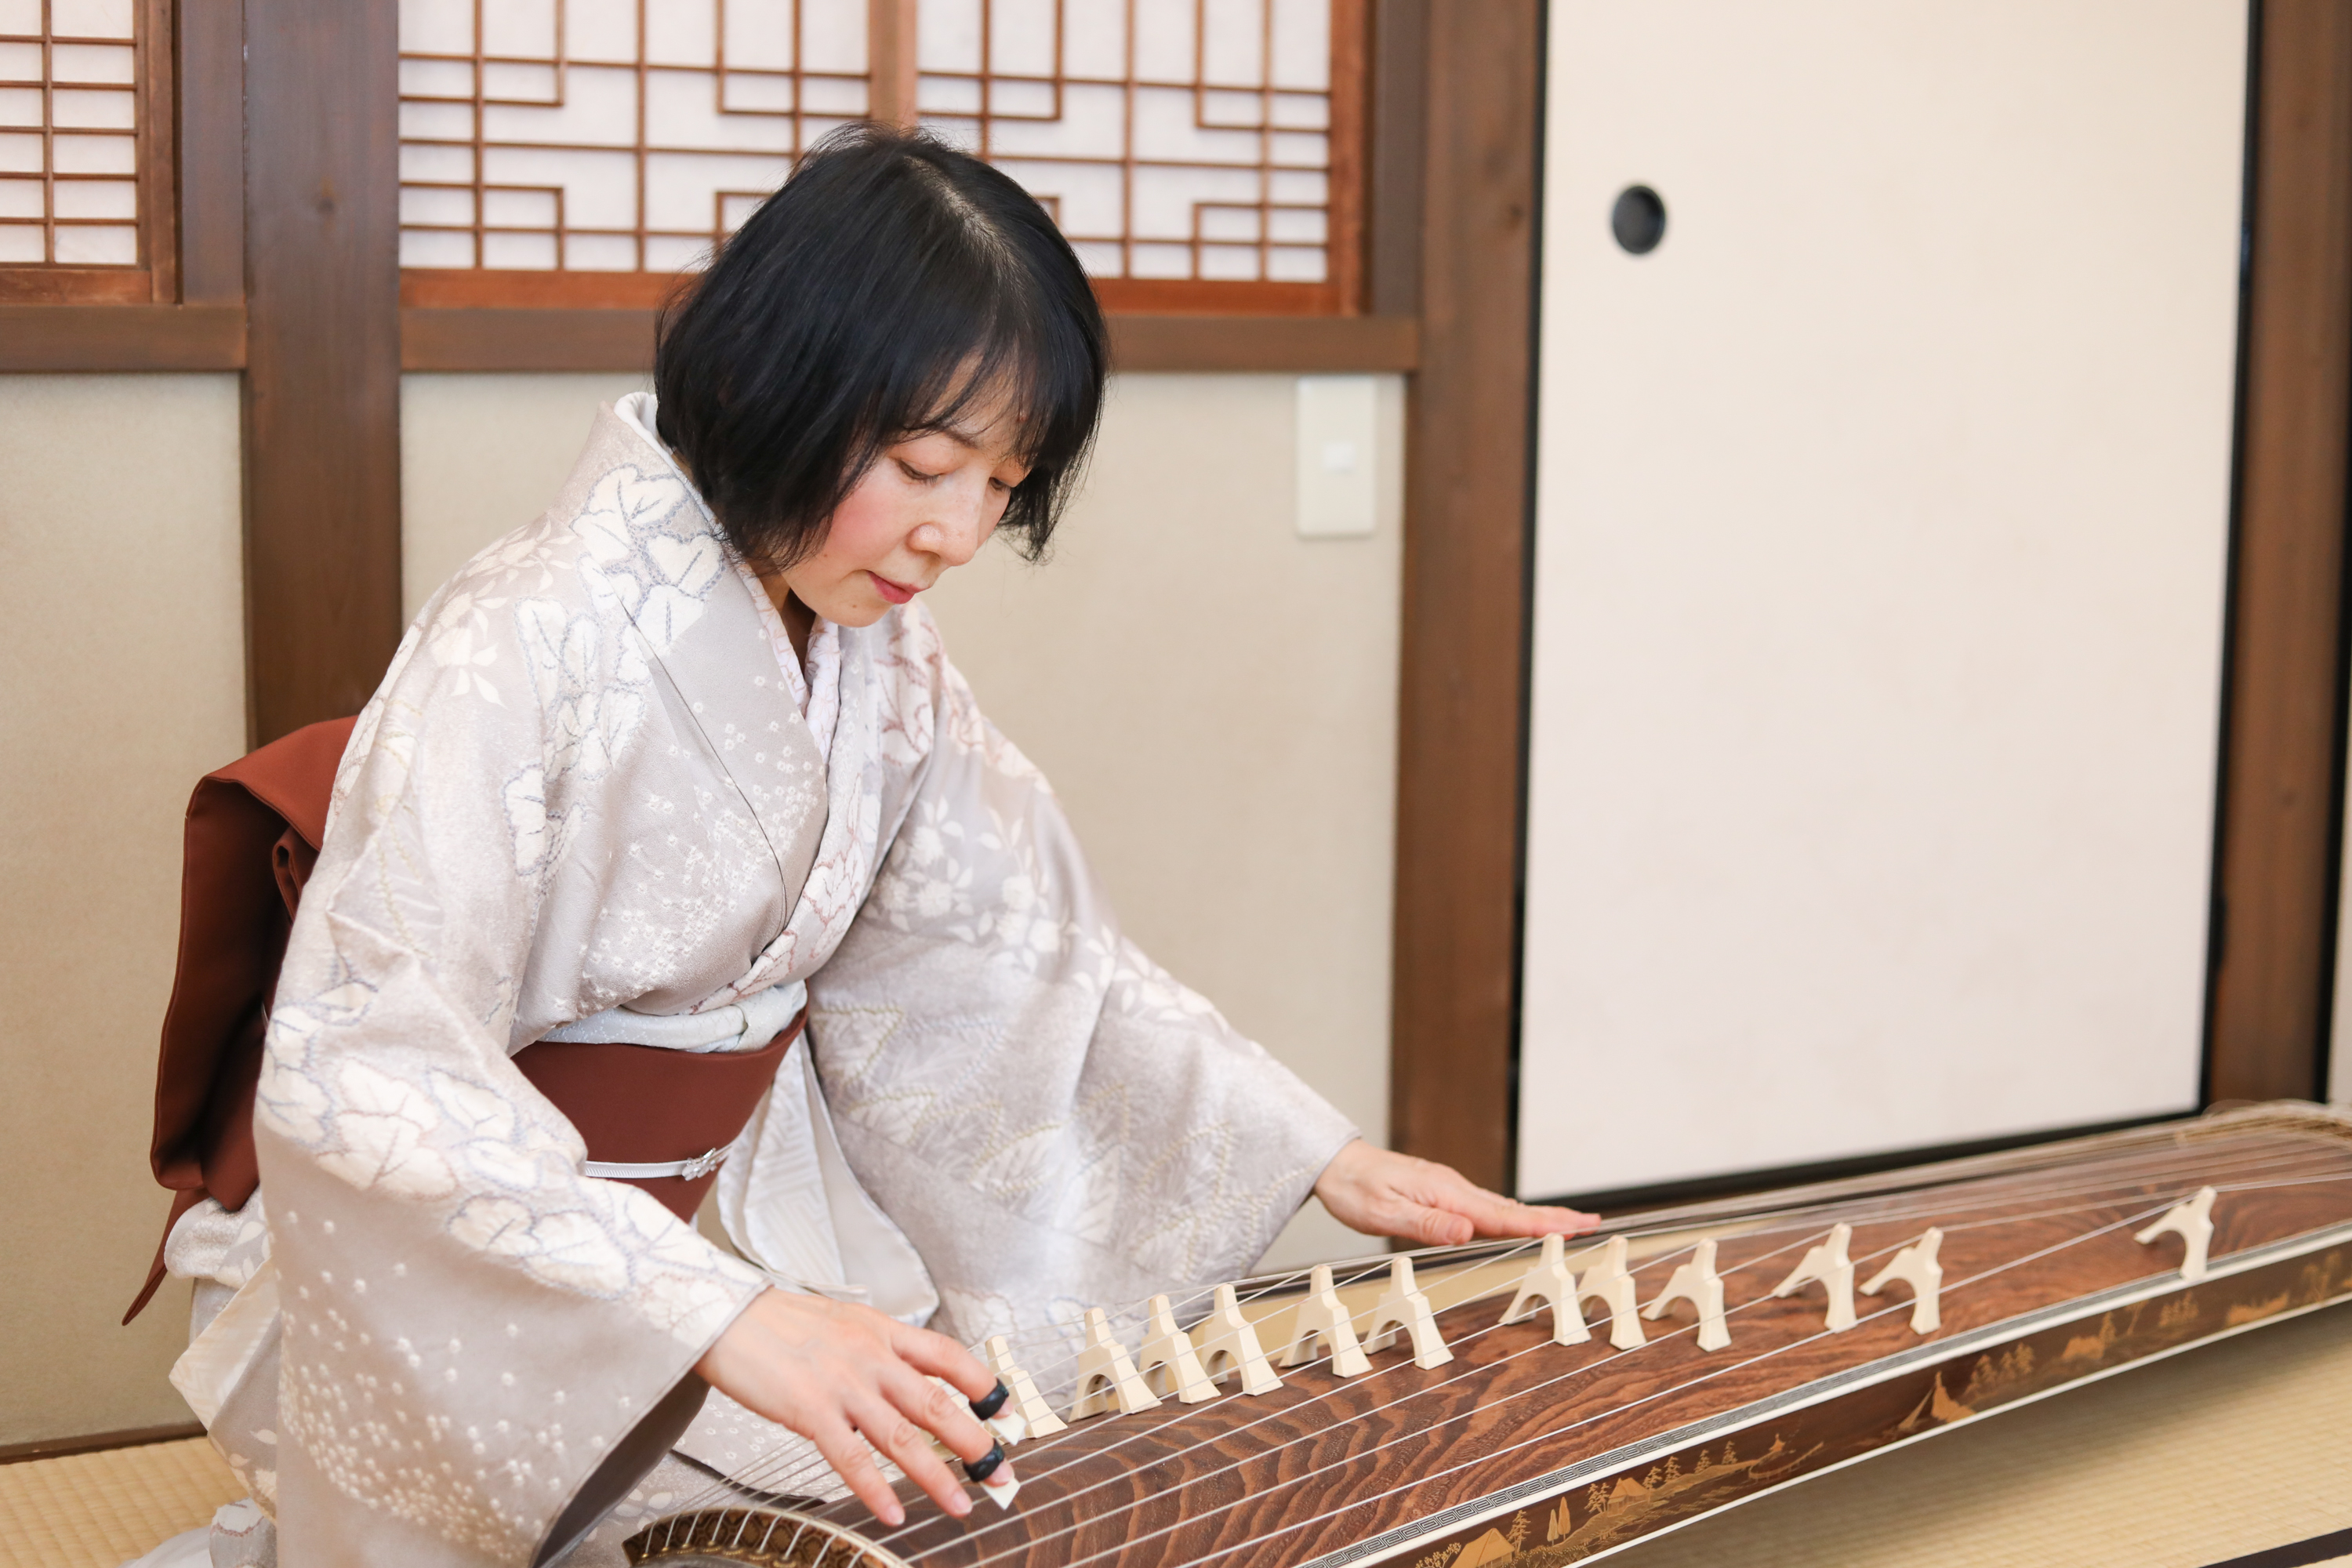 Кото японский музыкальный инструмент. Японский музыкальный инструмент сямисэн. Японская музыка кото. Секо японский музыкальный инструмент. Песня японский версия